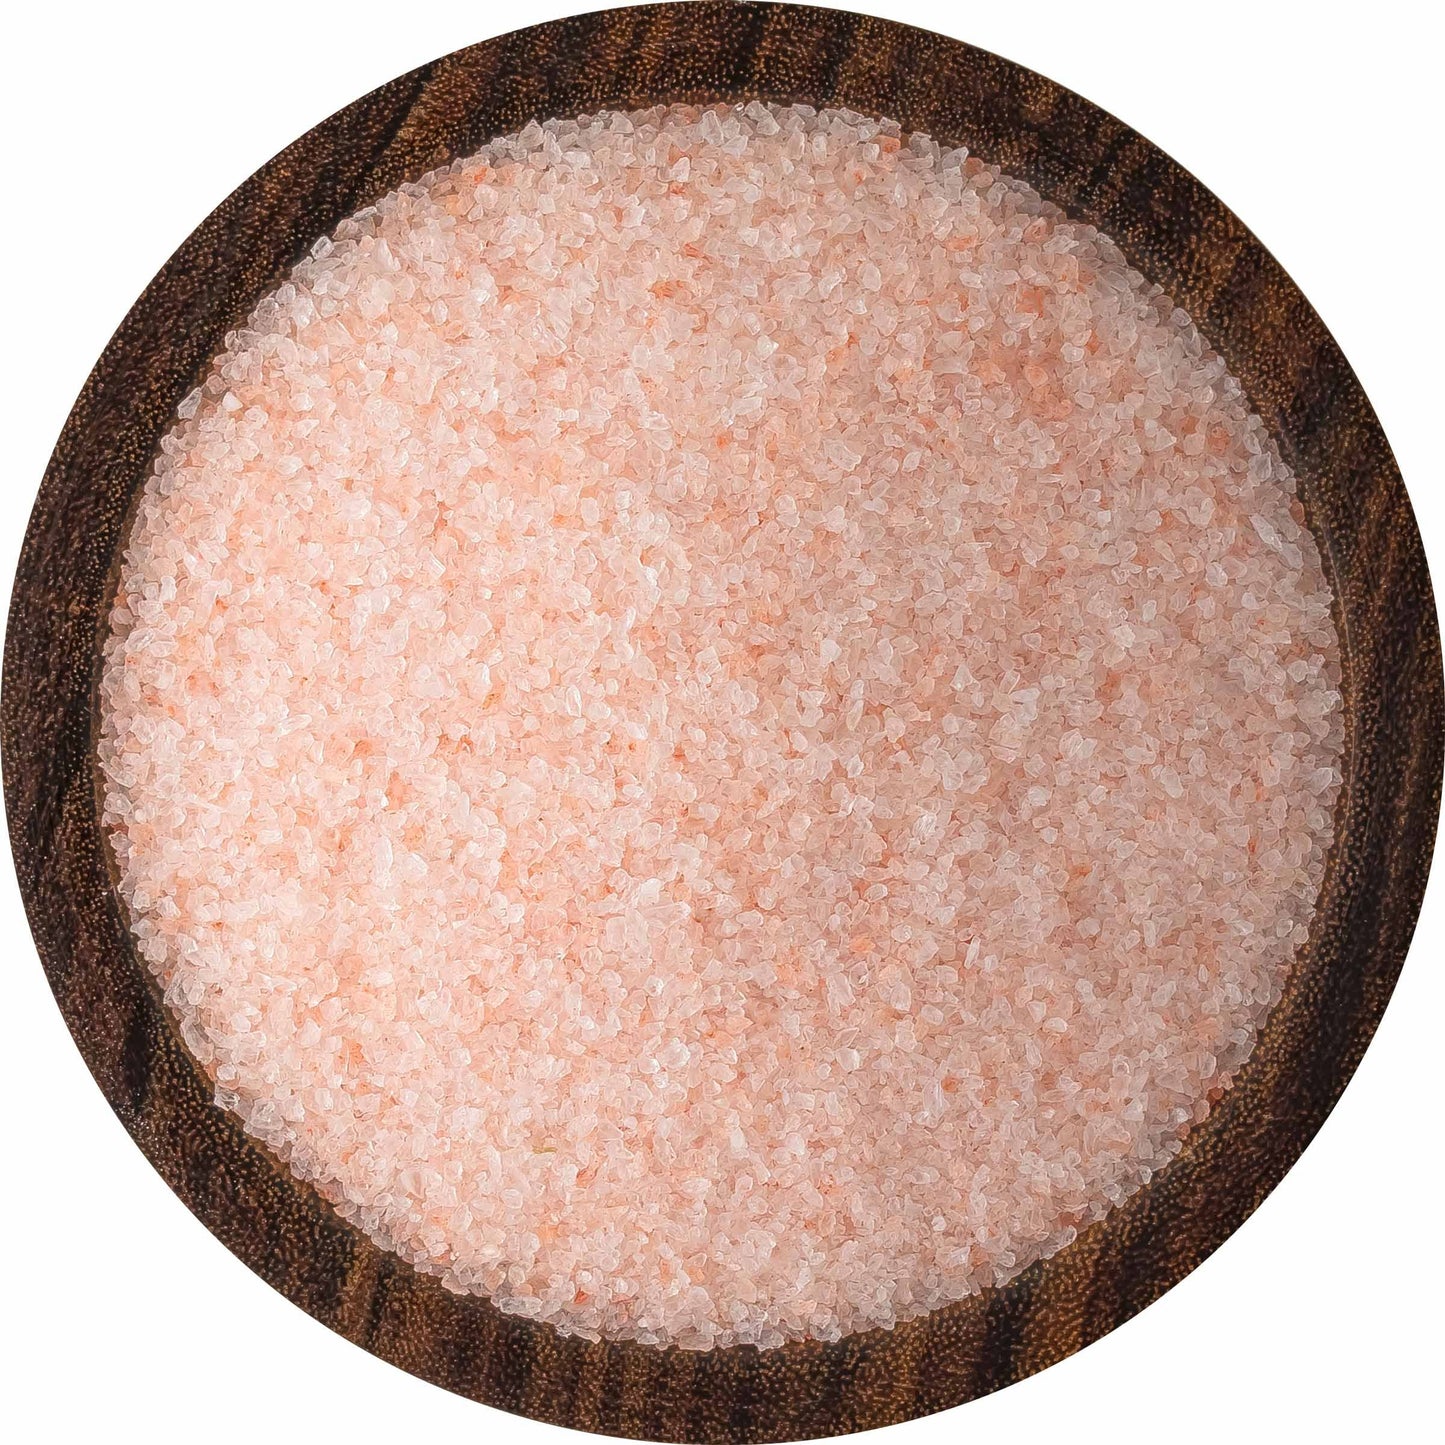 Himalayan Sherpa Pink Salt Fine Grain